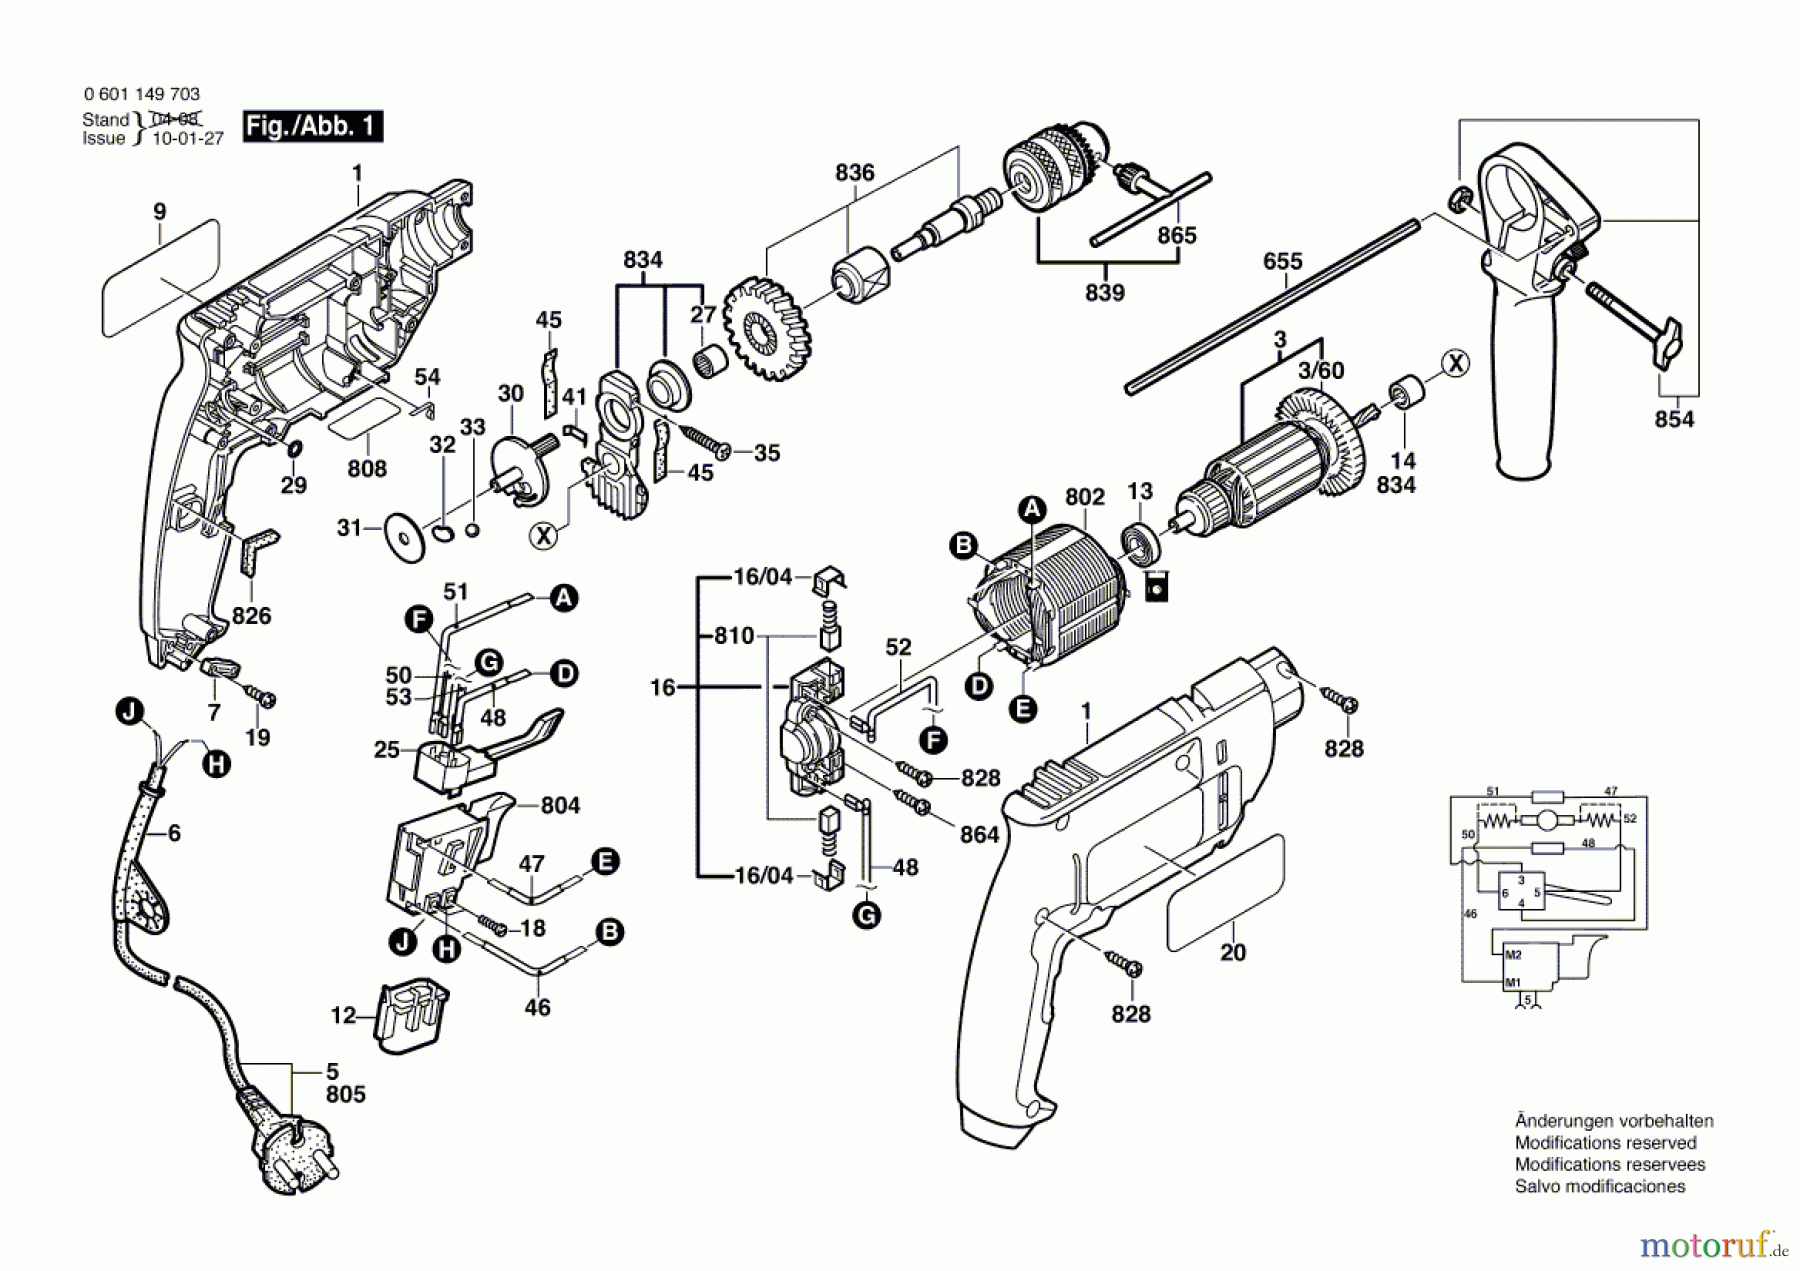  Bosch Werkzeug Schlagbohrmaschine GSB 450 RE Seite 1